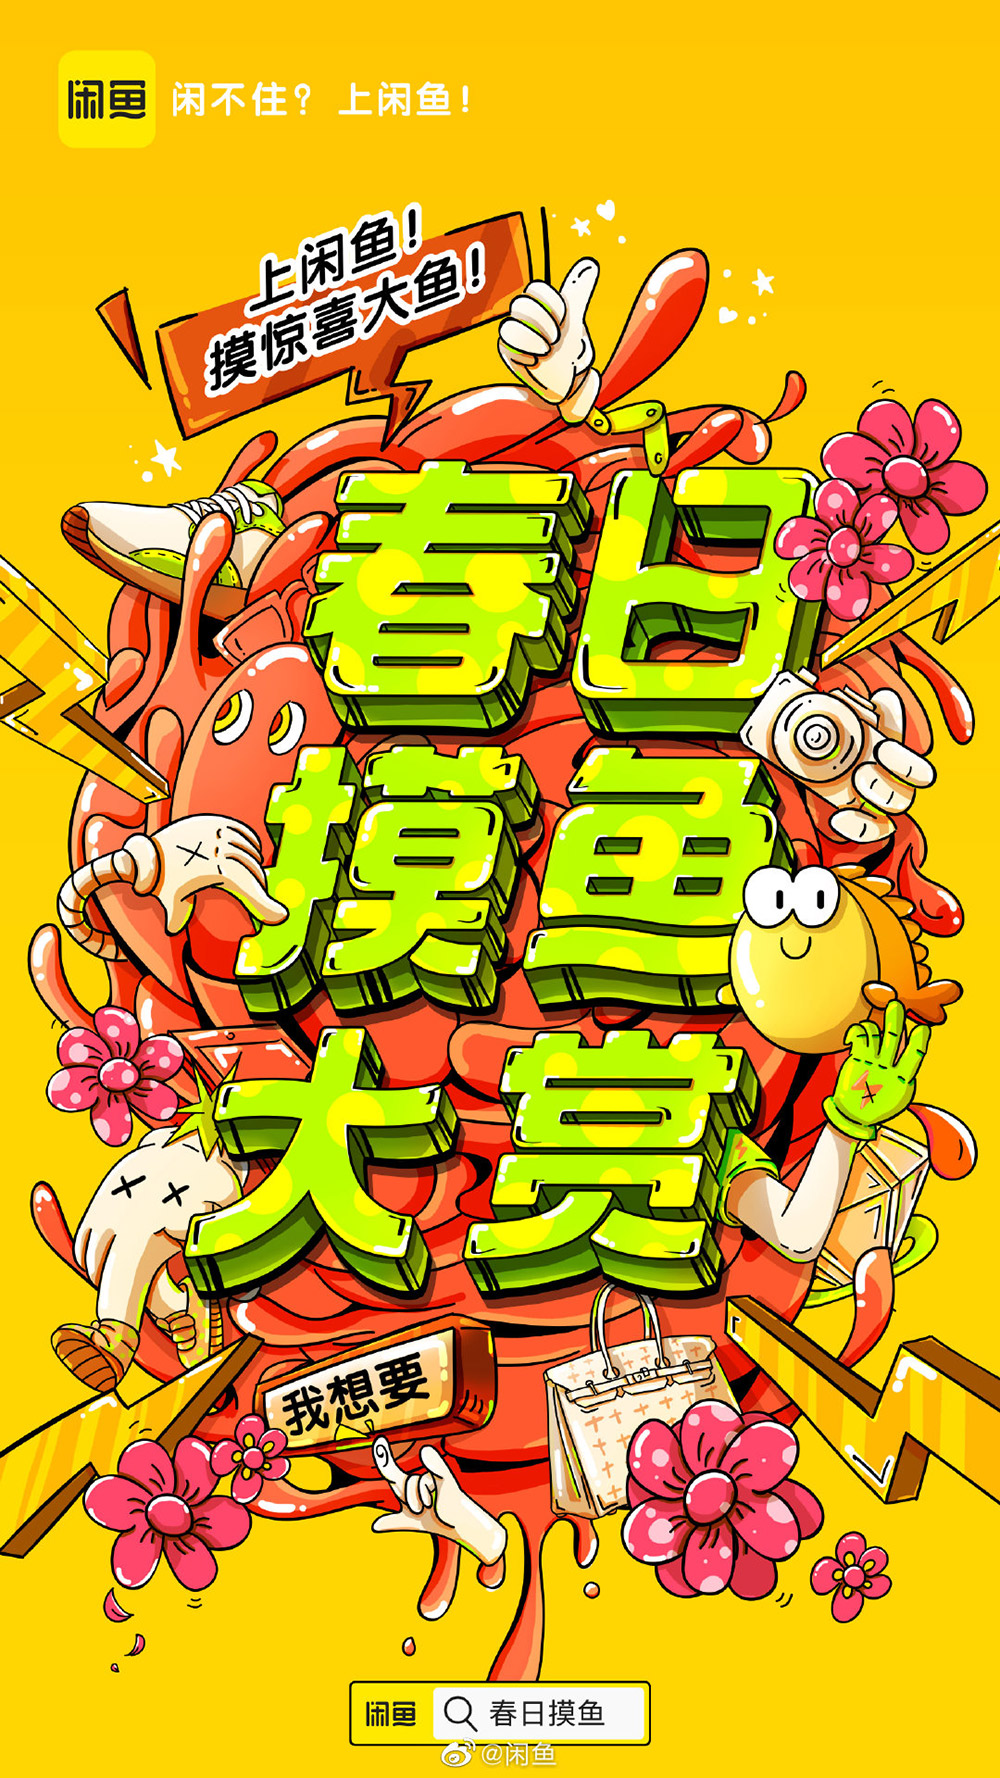 一组闲鱼「春日摸鱼大赏」插画海报